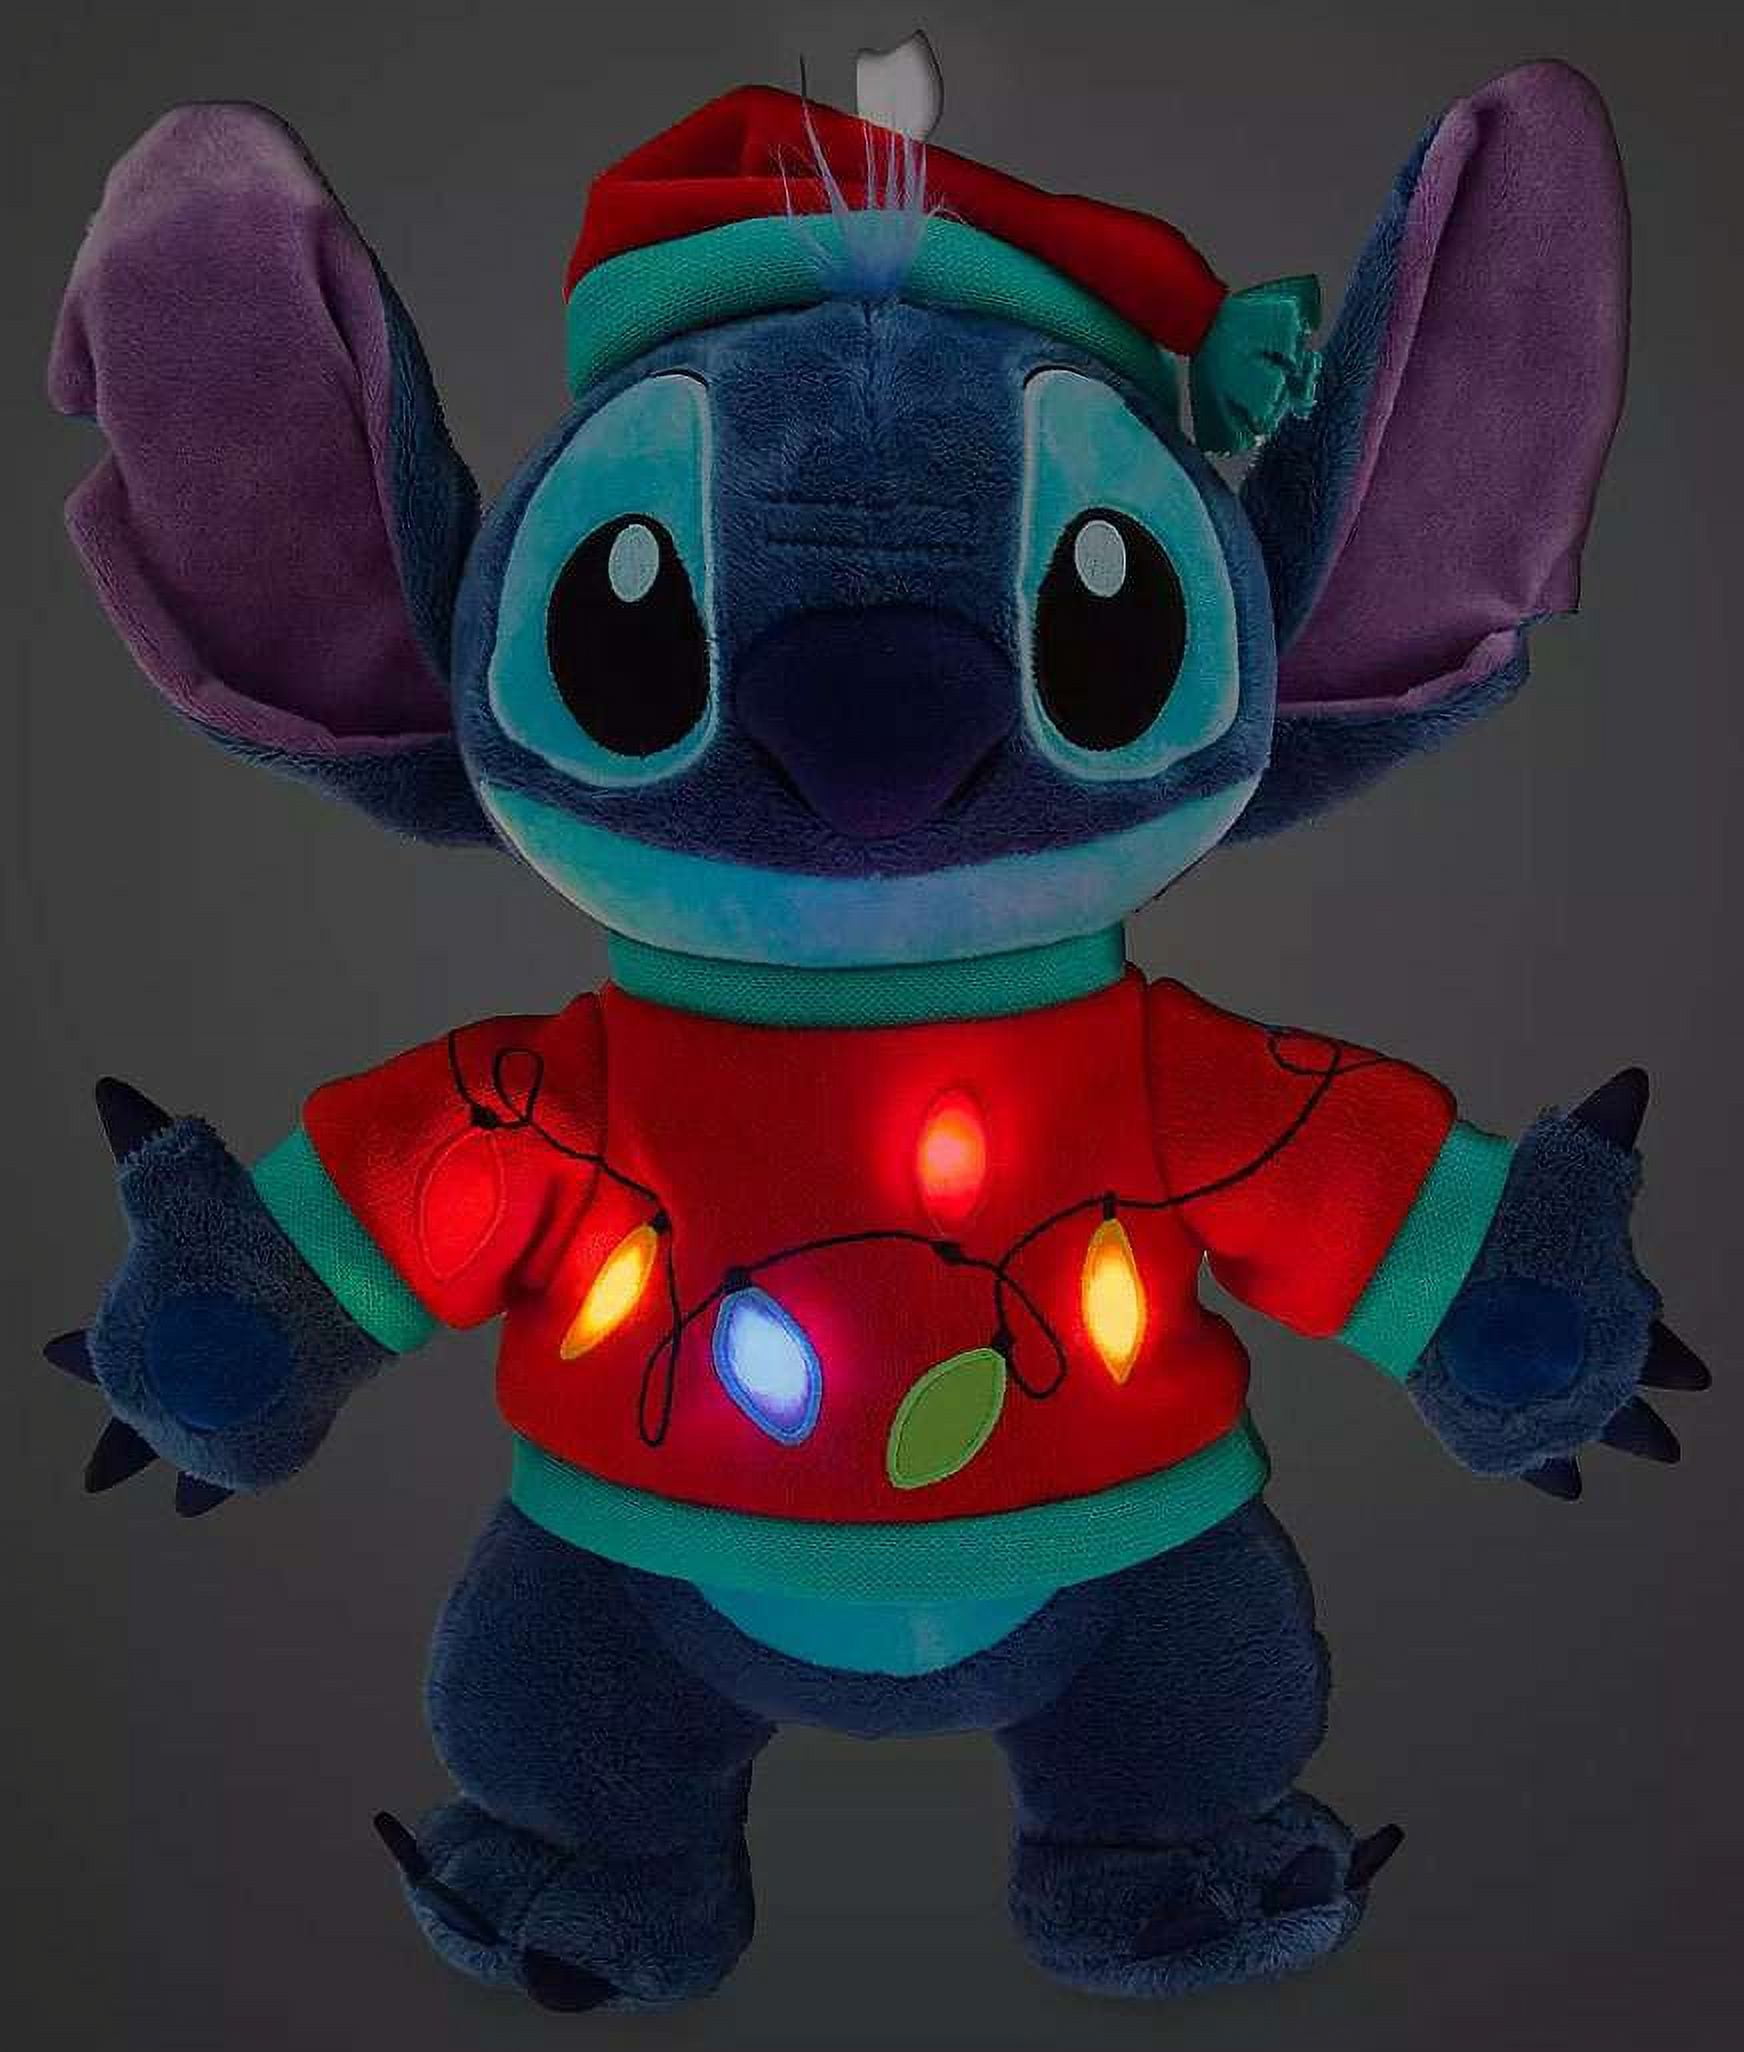 Disneyfind - NEW Stitch Nightlight from Primark 💙